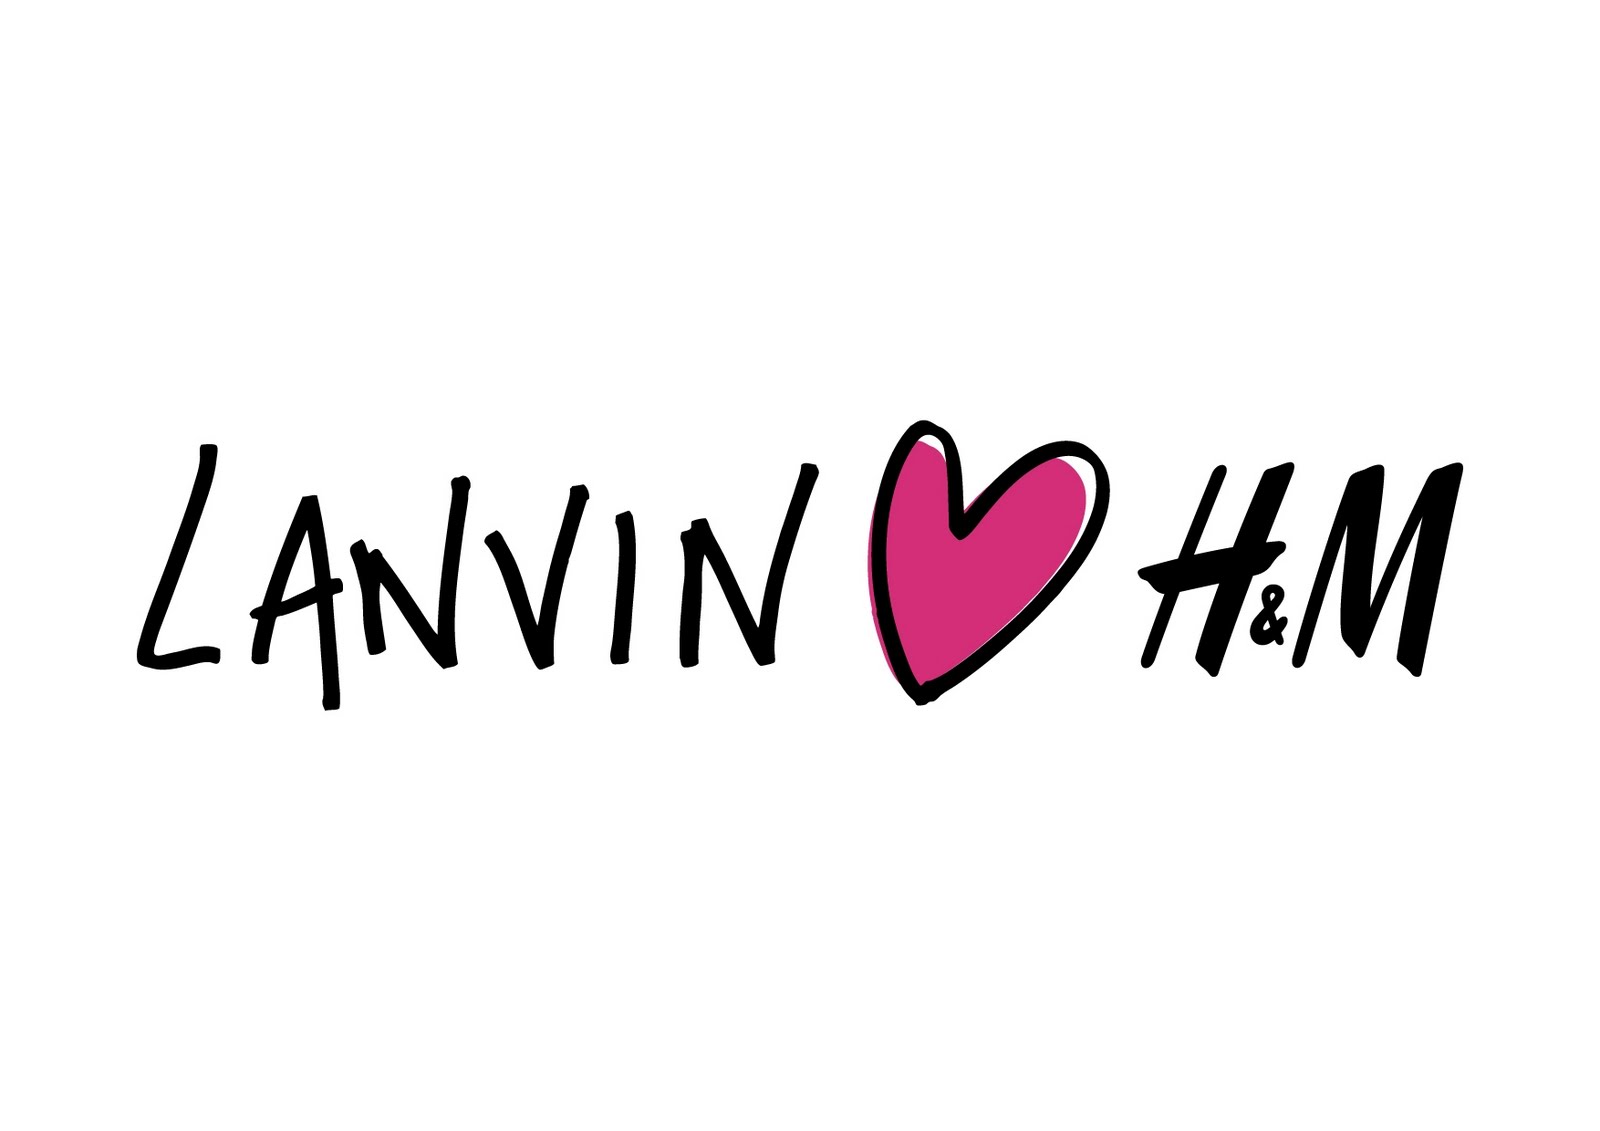 http://4.bp.blogspot.com/_bib-mtPqQeU/TH945HkmuJI/AAAAAAAAB-4/dVt86sydVDs/s1600/stylelab_hm_lanvin_logo.jpg